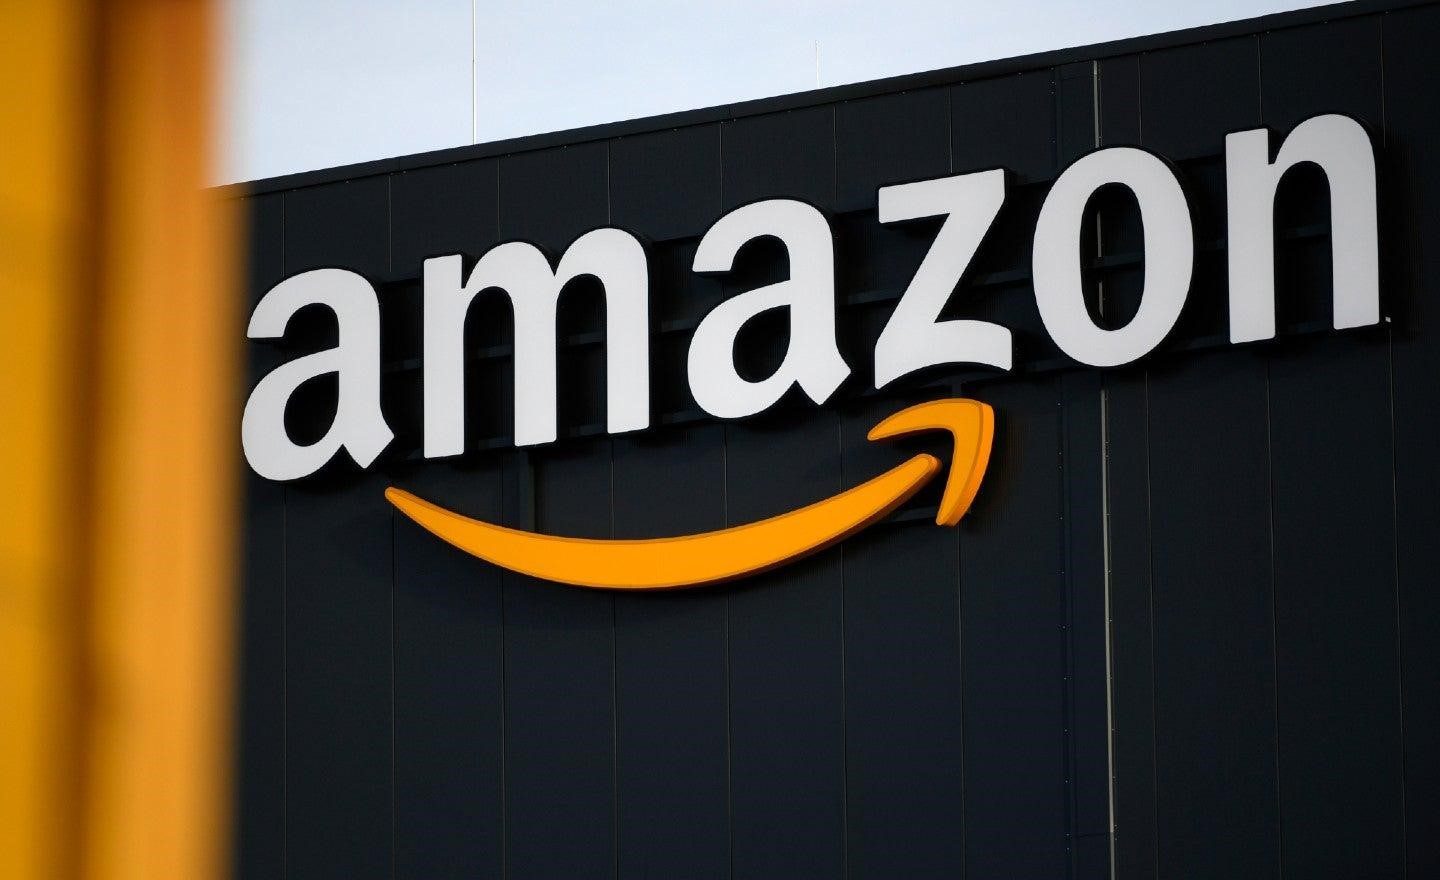 Những sản phẩm kinh doanh tiềm năng trên Amazon năm 2021